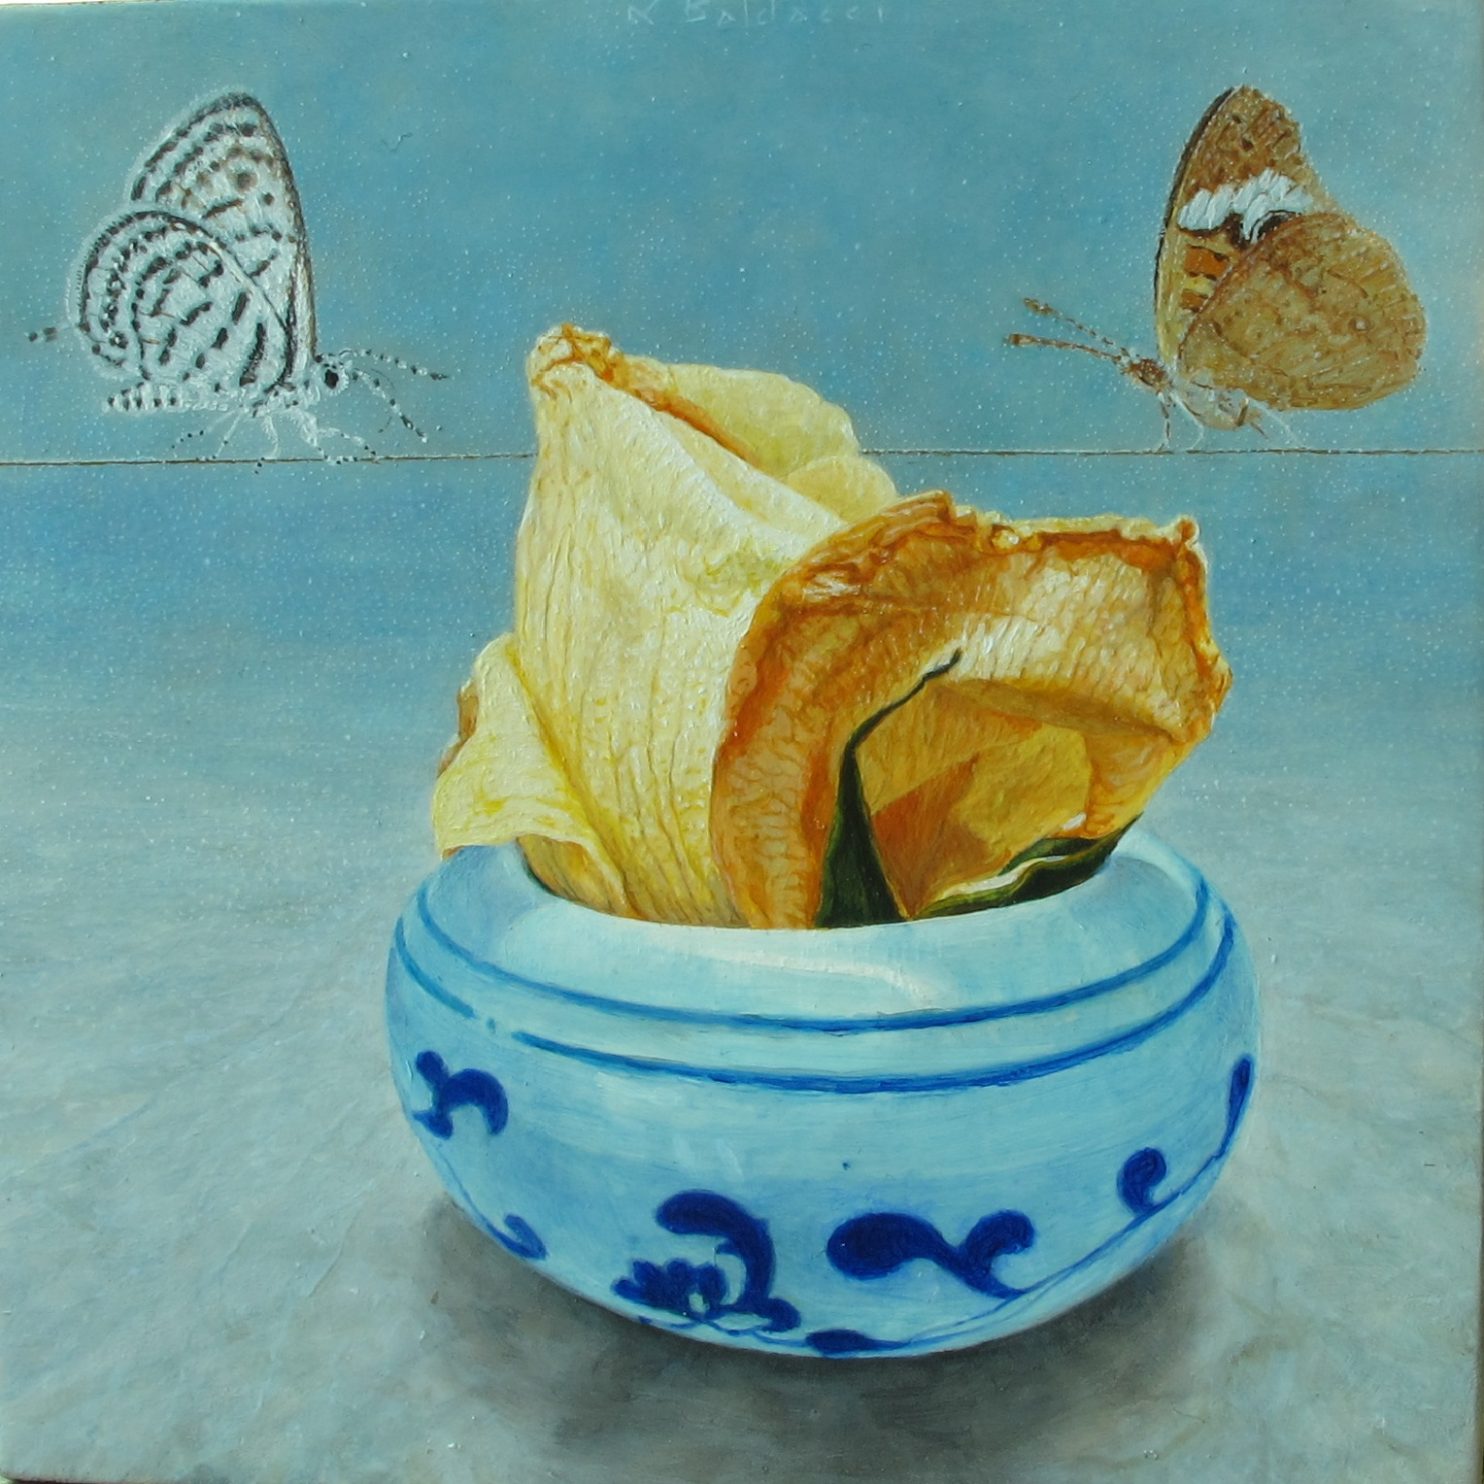 Baldacci Luciano, Farfalle in equilibrio, 2020, olio su tavola, 15x15 cm